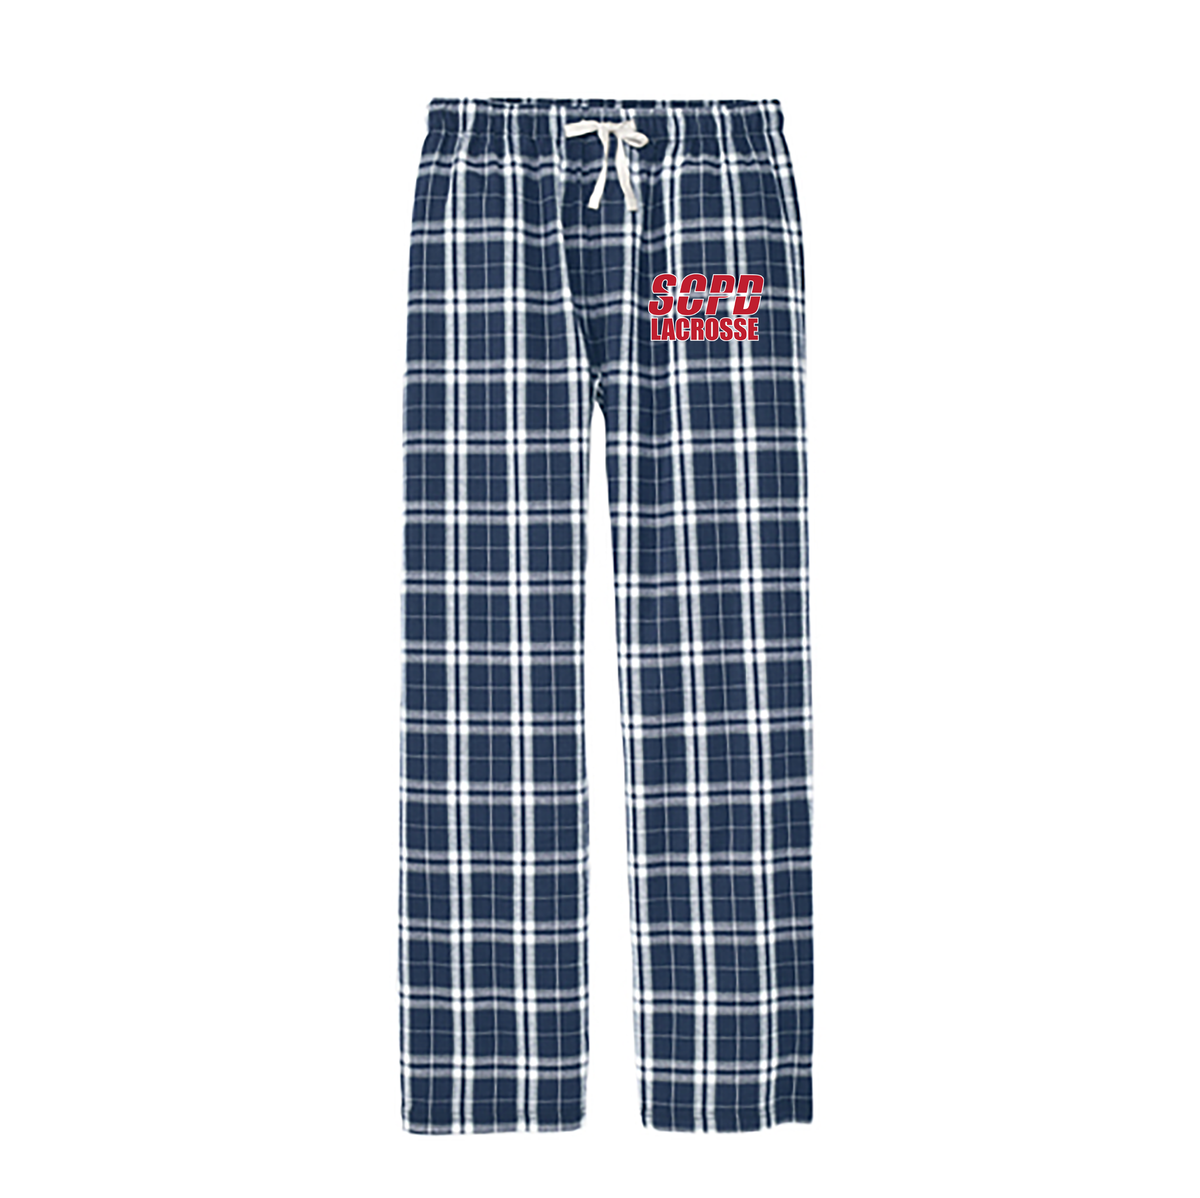 SCPD Lacrosse Plaid Pajama Pants